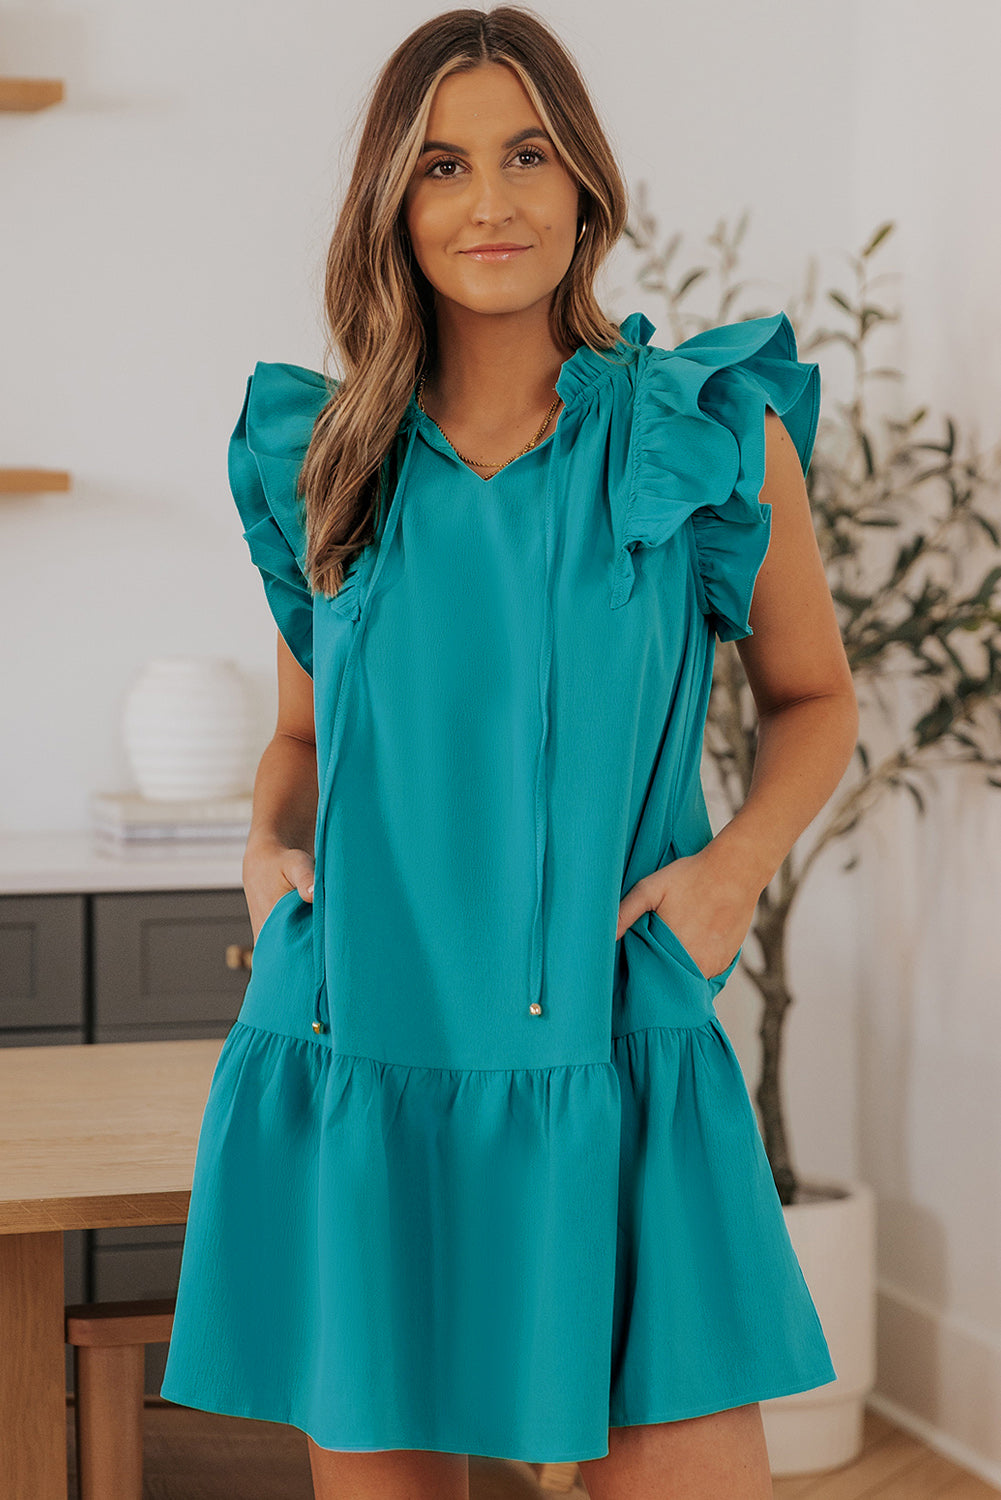 Azalea Tiered Ruffled Sleeves Mini Dress with Pockets by Threaded Pear